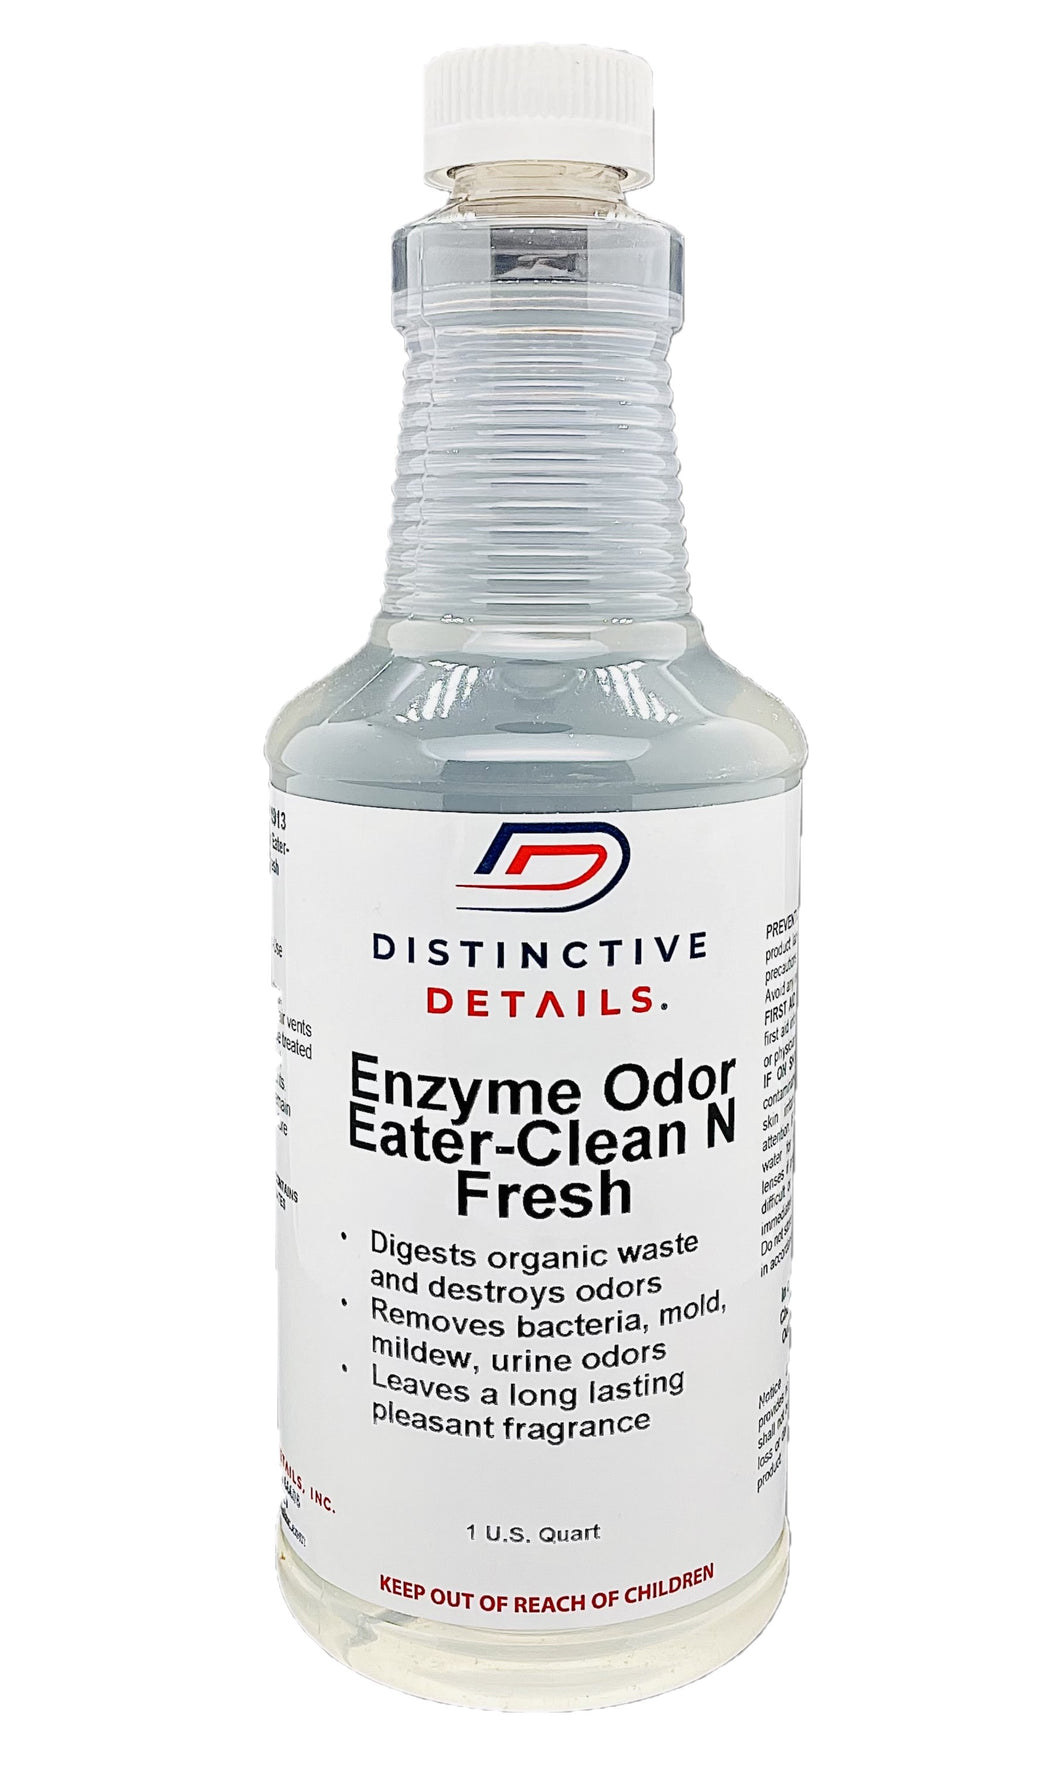 Enzyme Odor Eater-Clean N Fresh